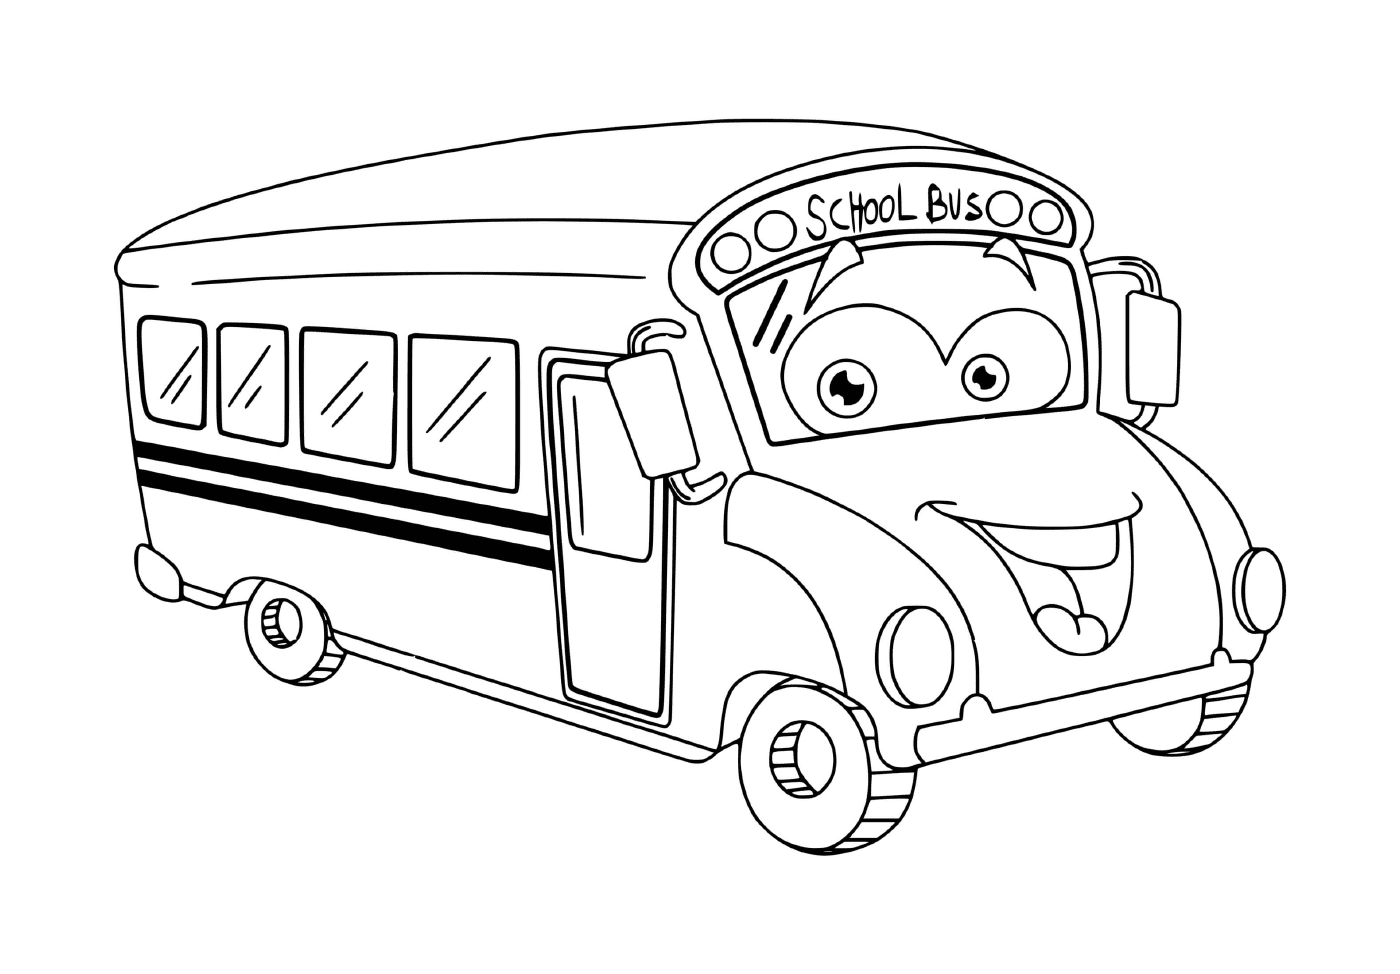  儿童校车 